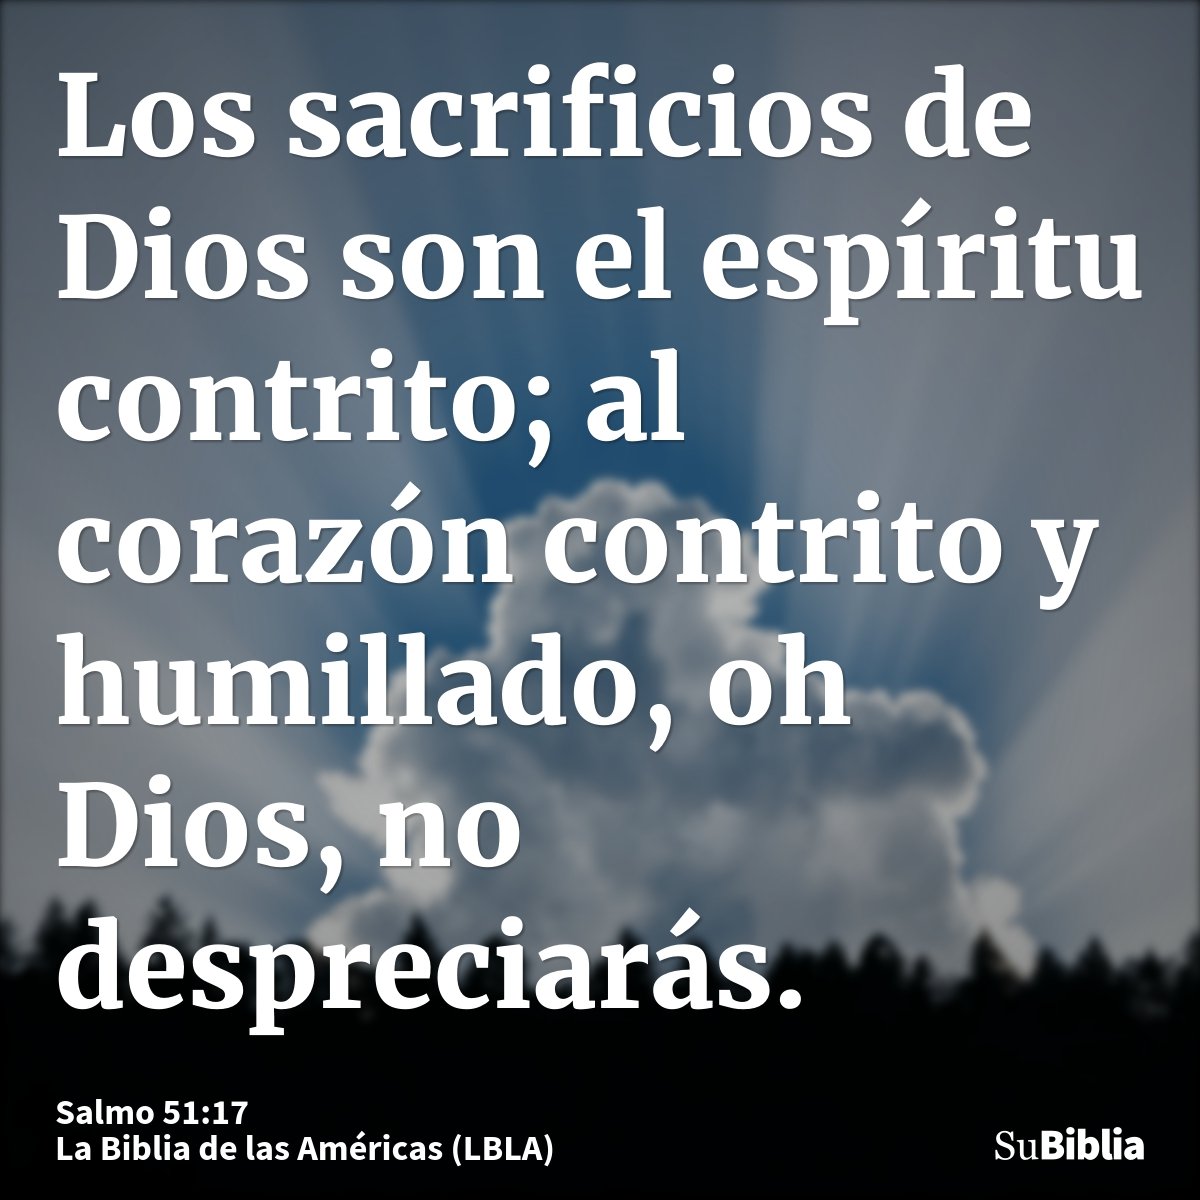 Los sacrificios de Dios son el espíritu contrito; al corazón contrito y humillado, oh Dios, no despreciarás.